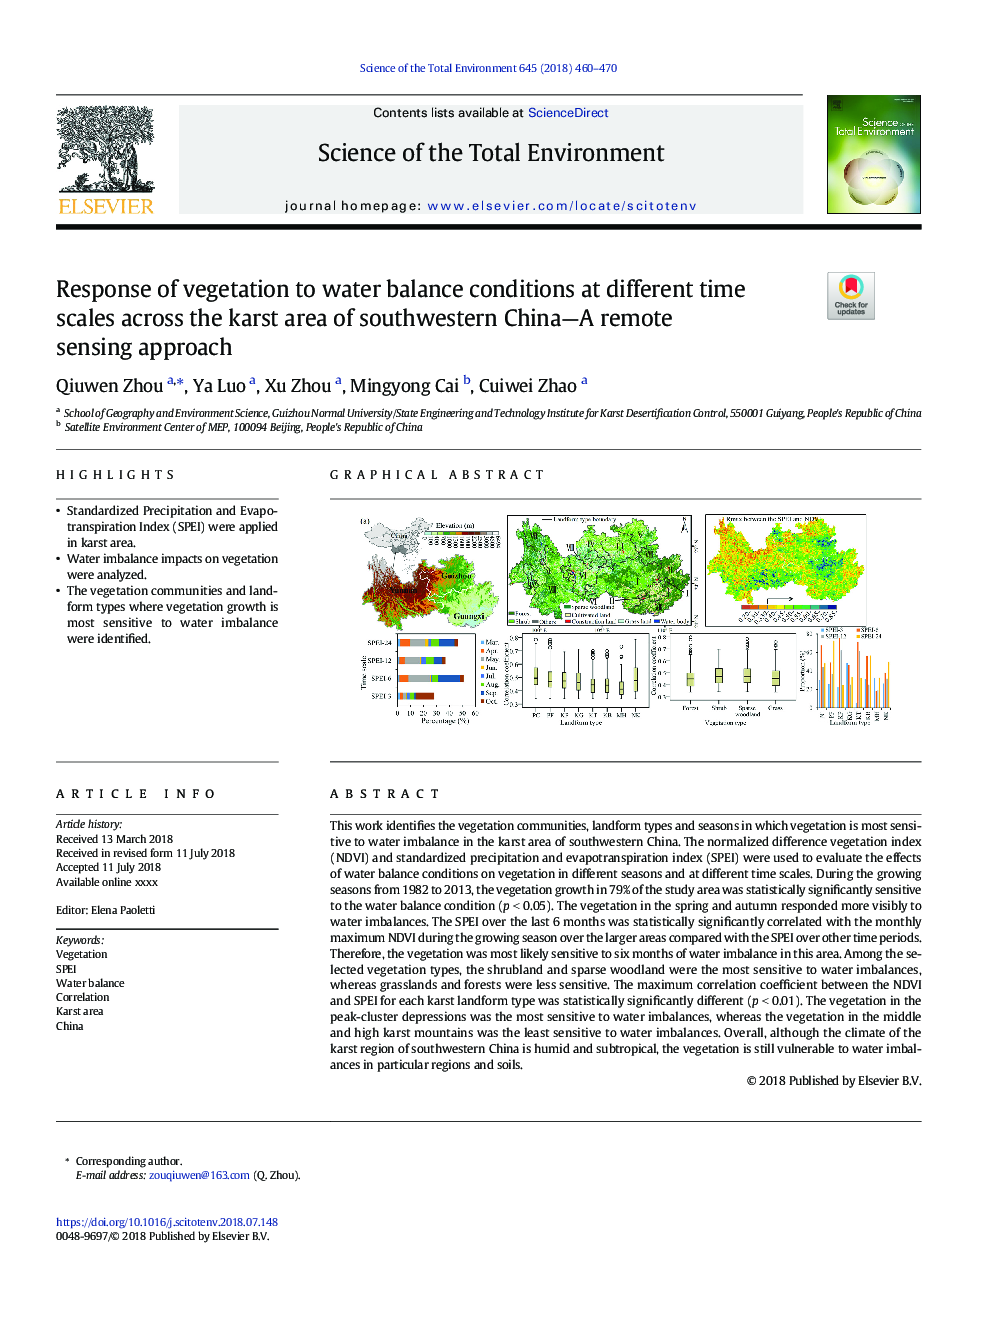 پاسخ گیاه به شرایط تعادل آب در مقیاس های زمانی مختلف در سراسر منطقه کاروست جنوب غربی چین- یک روش سنجش از راه دور 